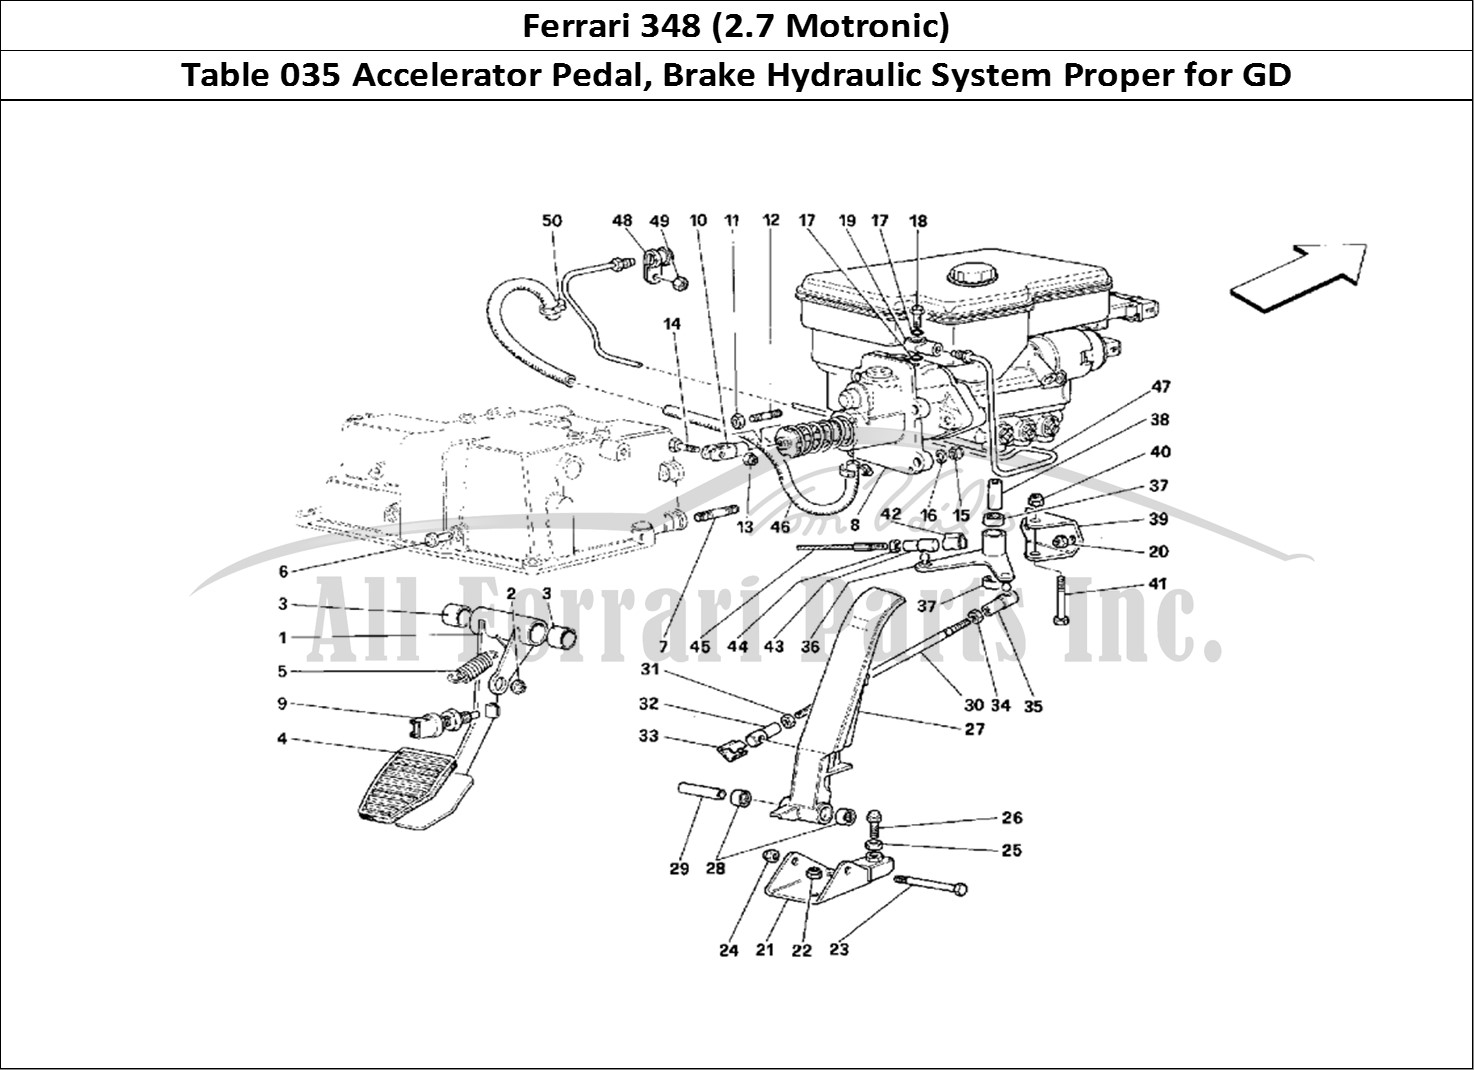 Ferrari Parts Ferrari 348 (2.7 Motronic) Page 035 Throttle Pedal and Brake